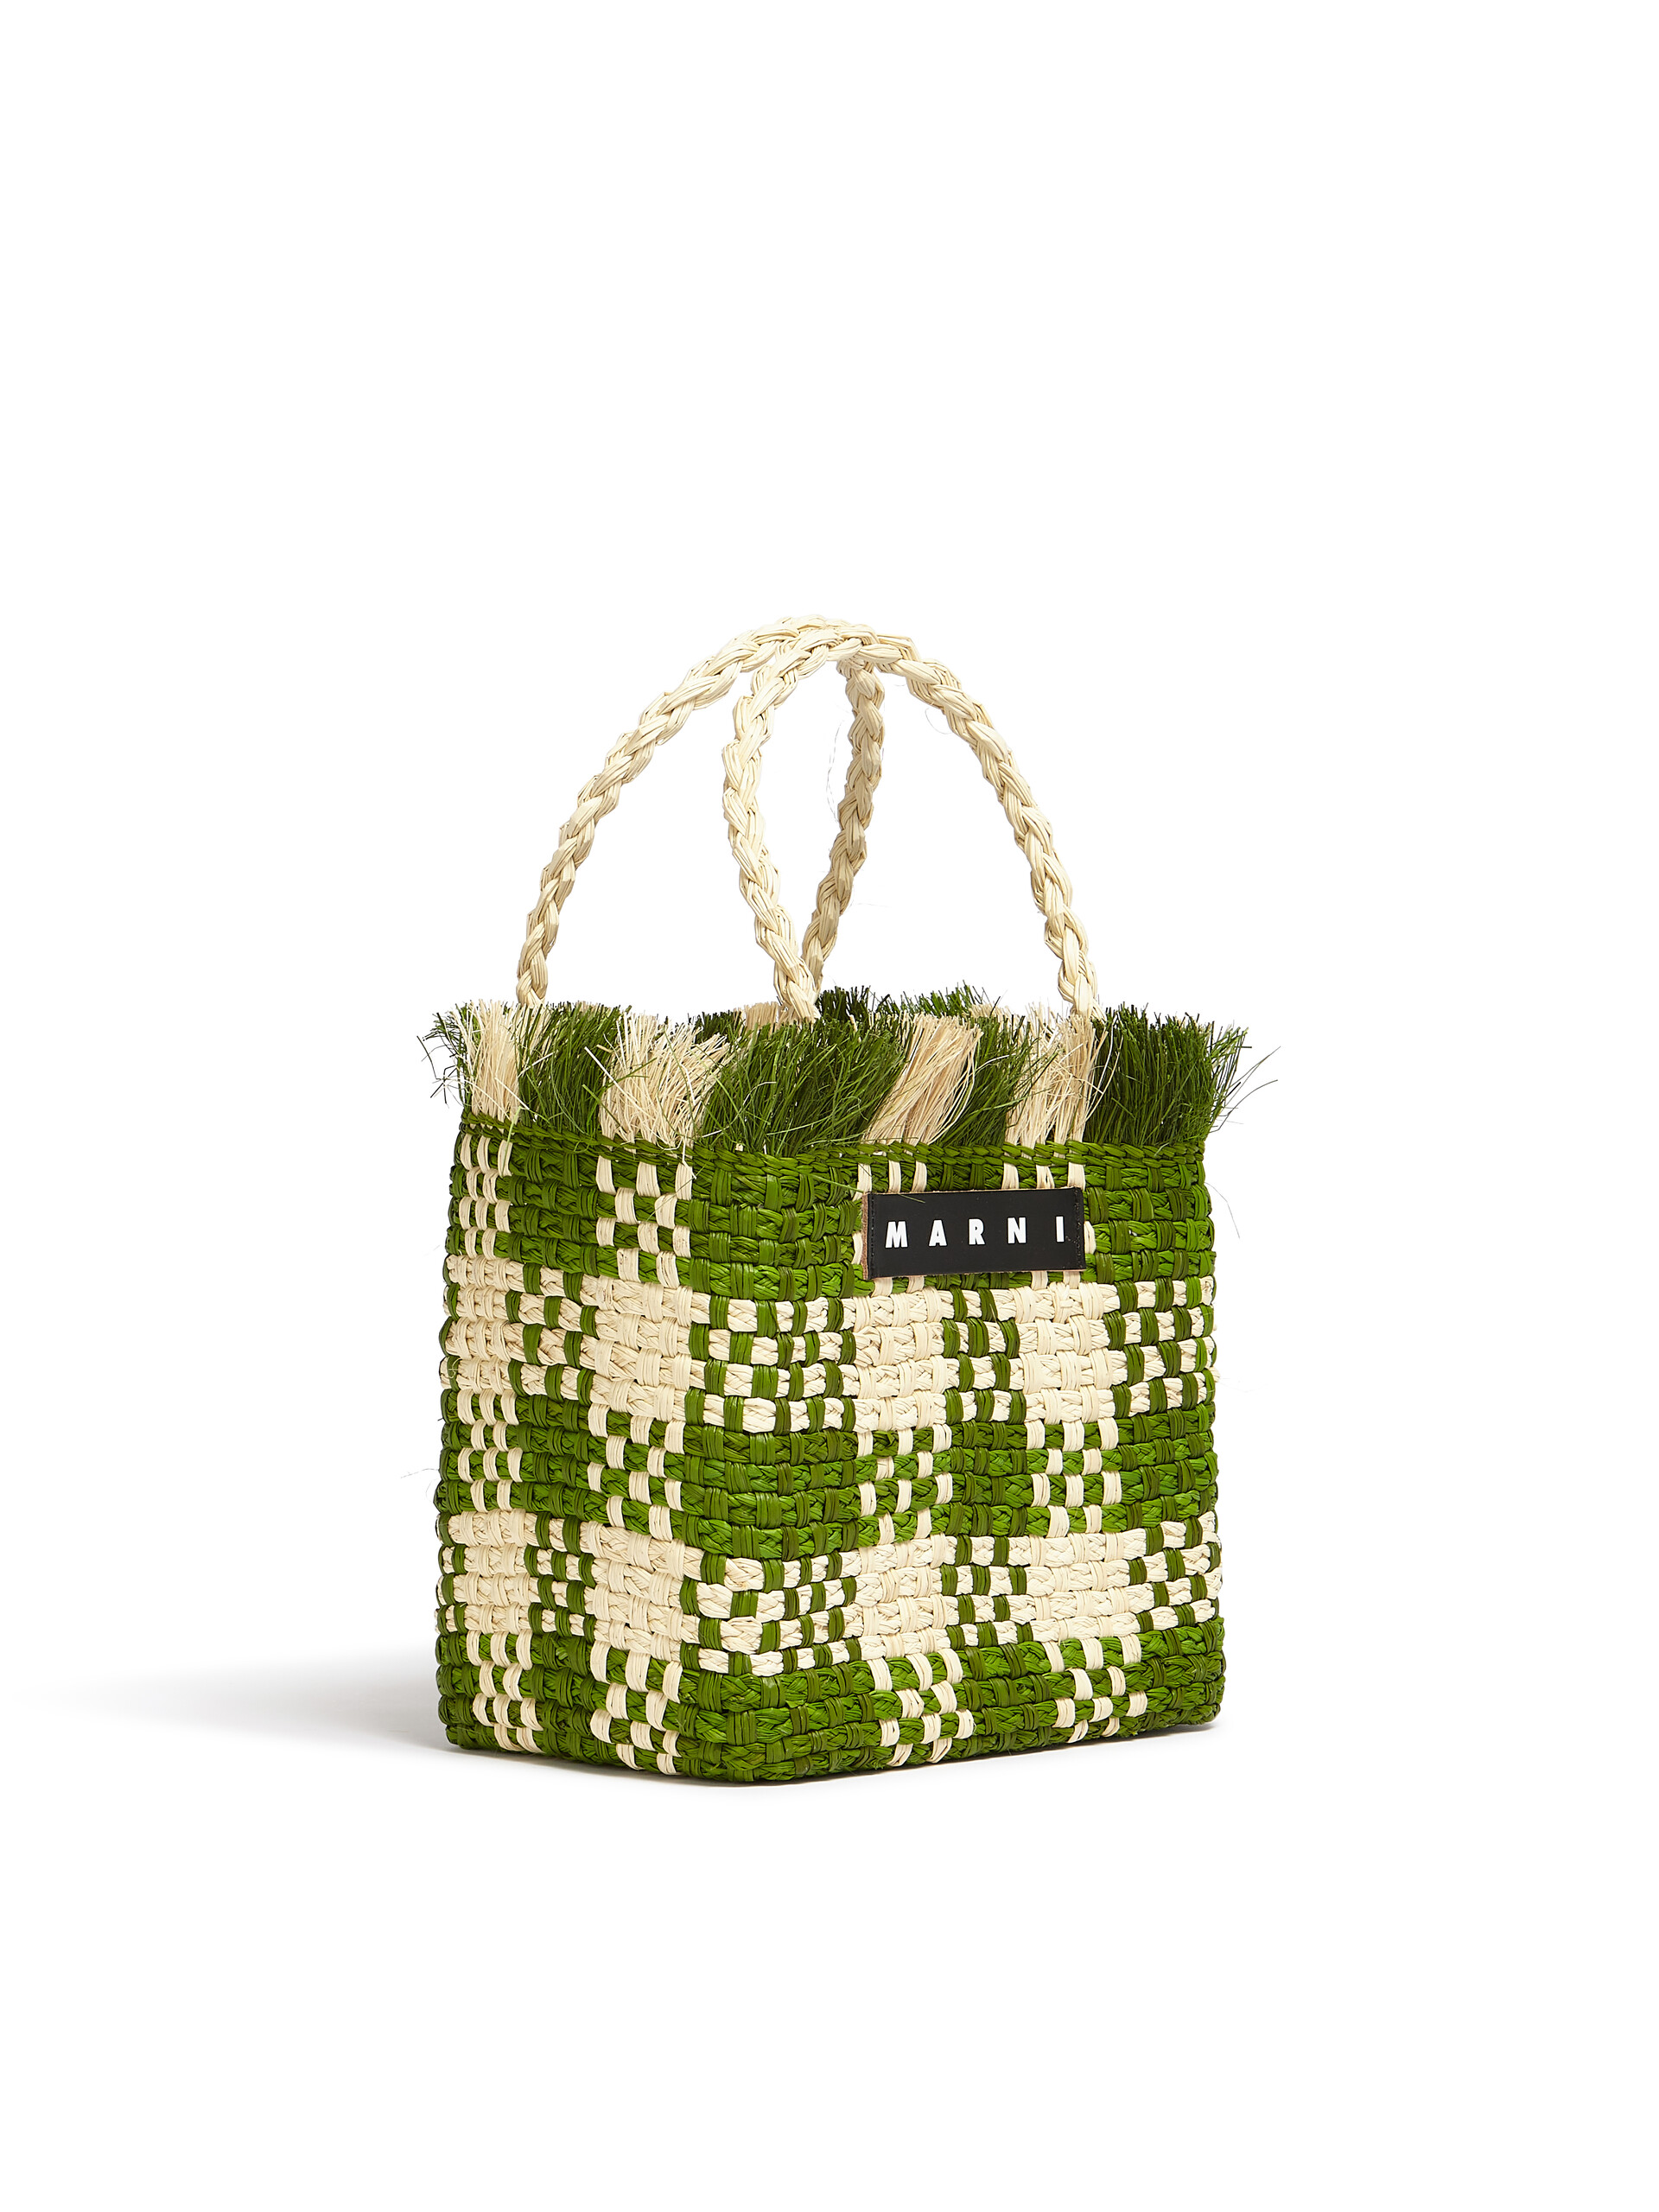 MARNI MARKET small bag in green natural fiber - Shopping Bags - Image 2